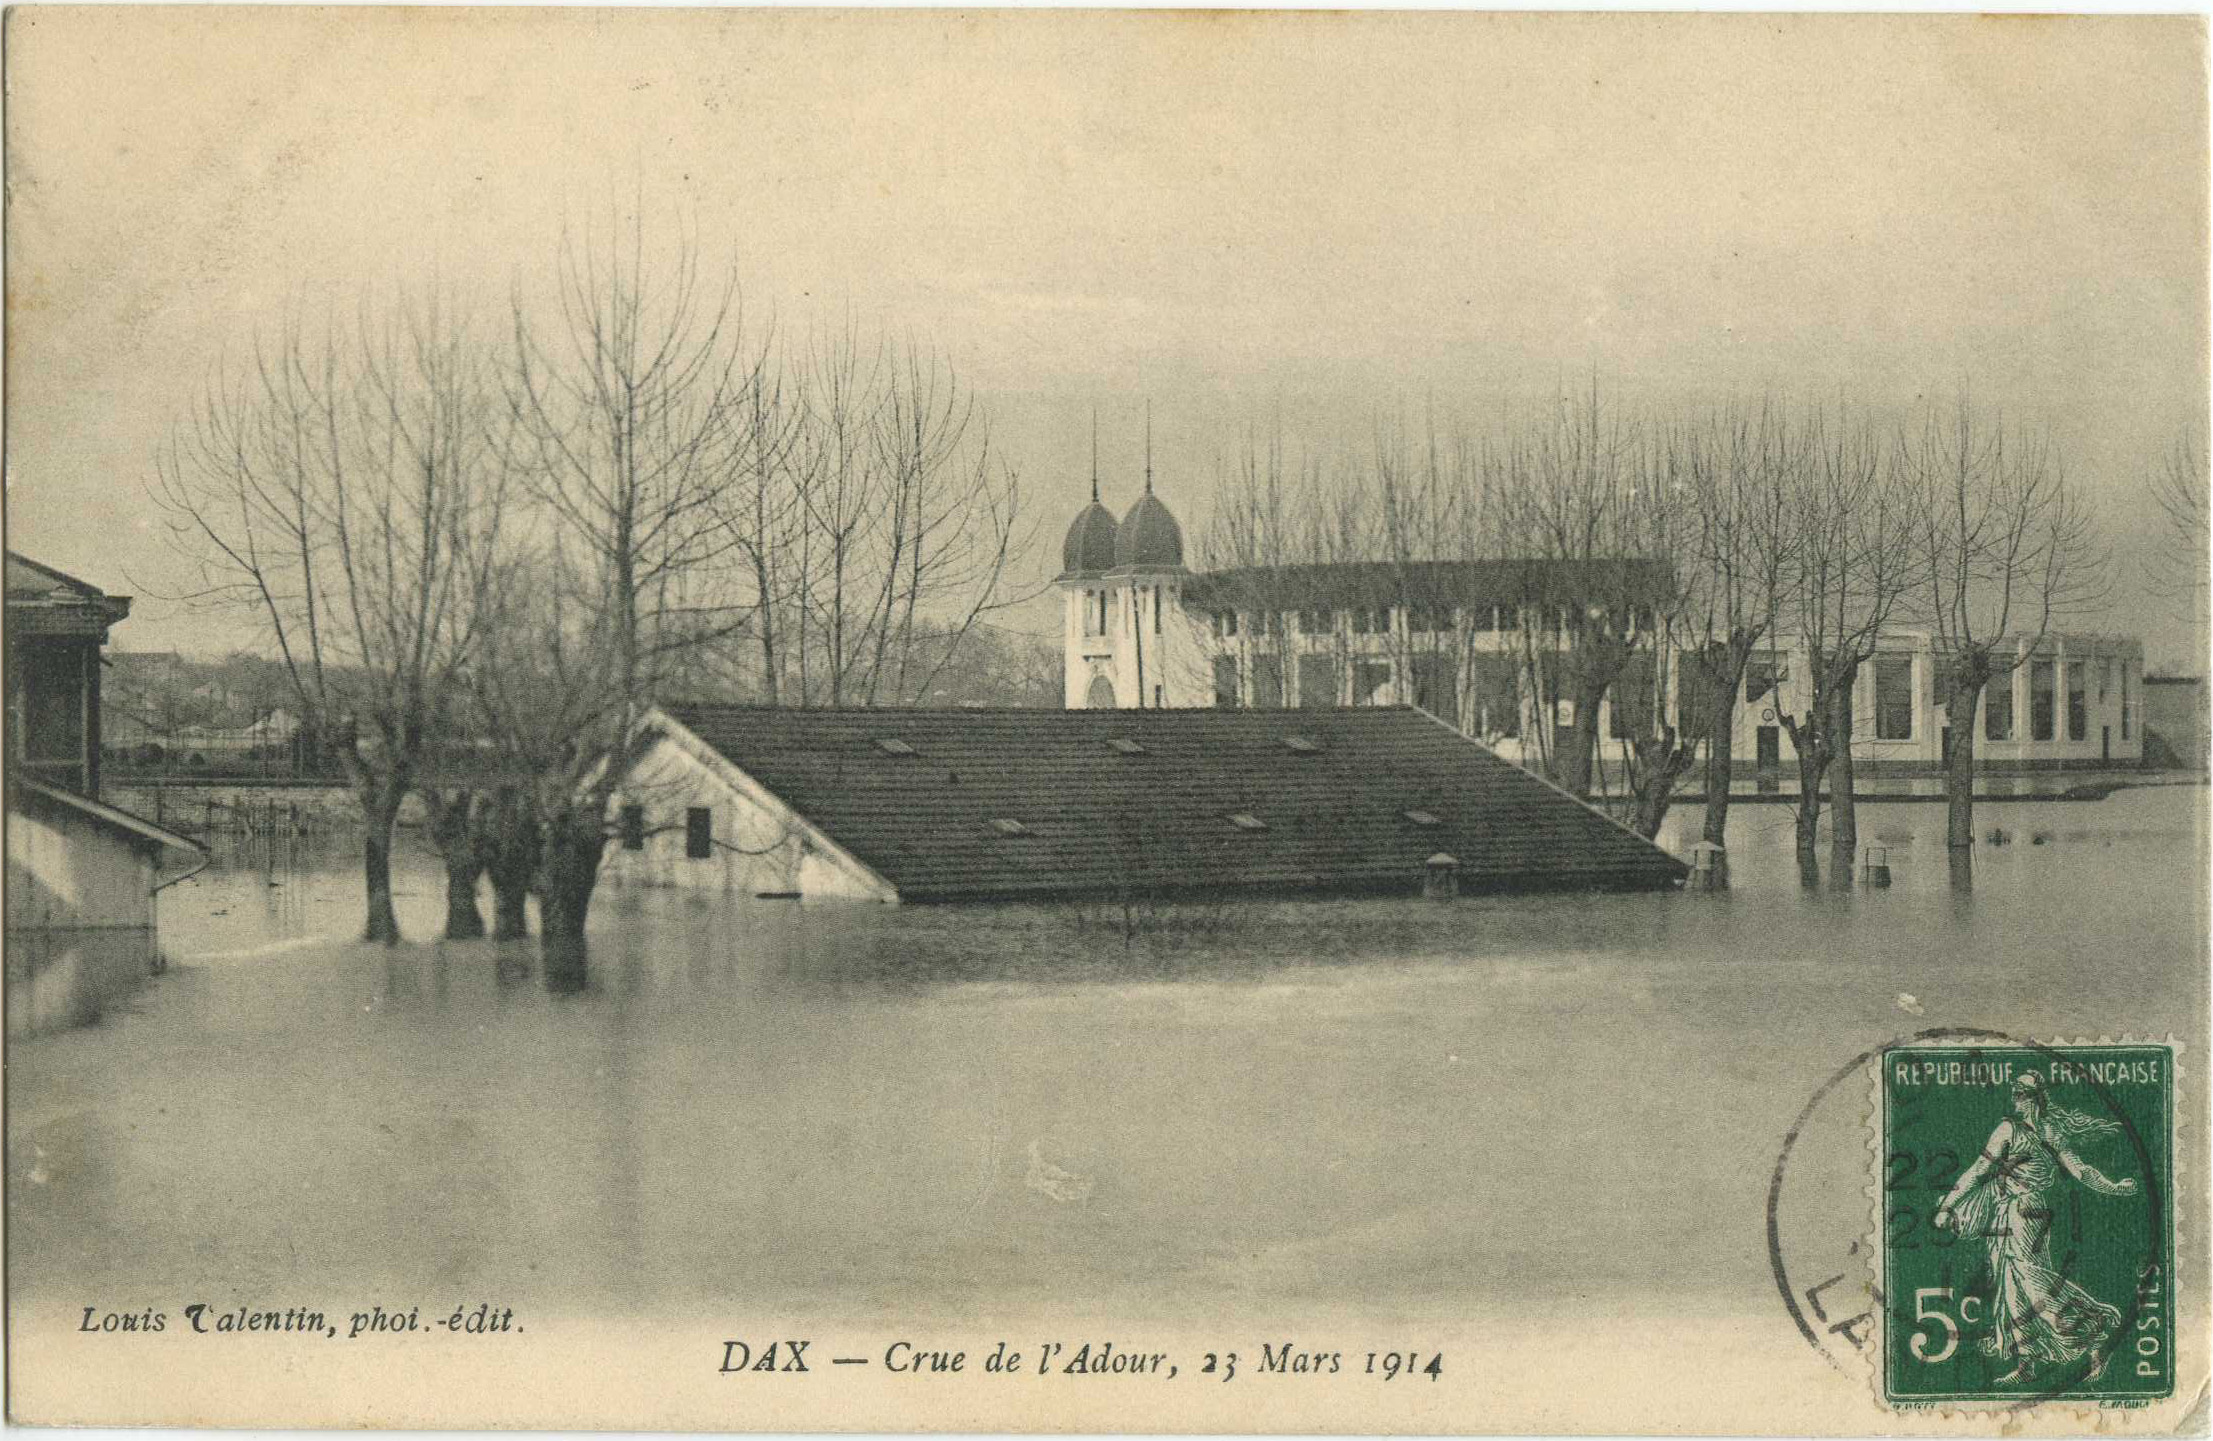 Dax - Crue de l'Adour, 23 Mars 1914